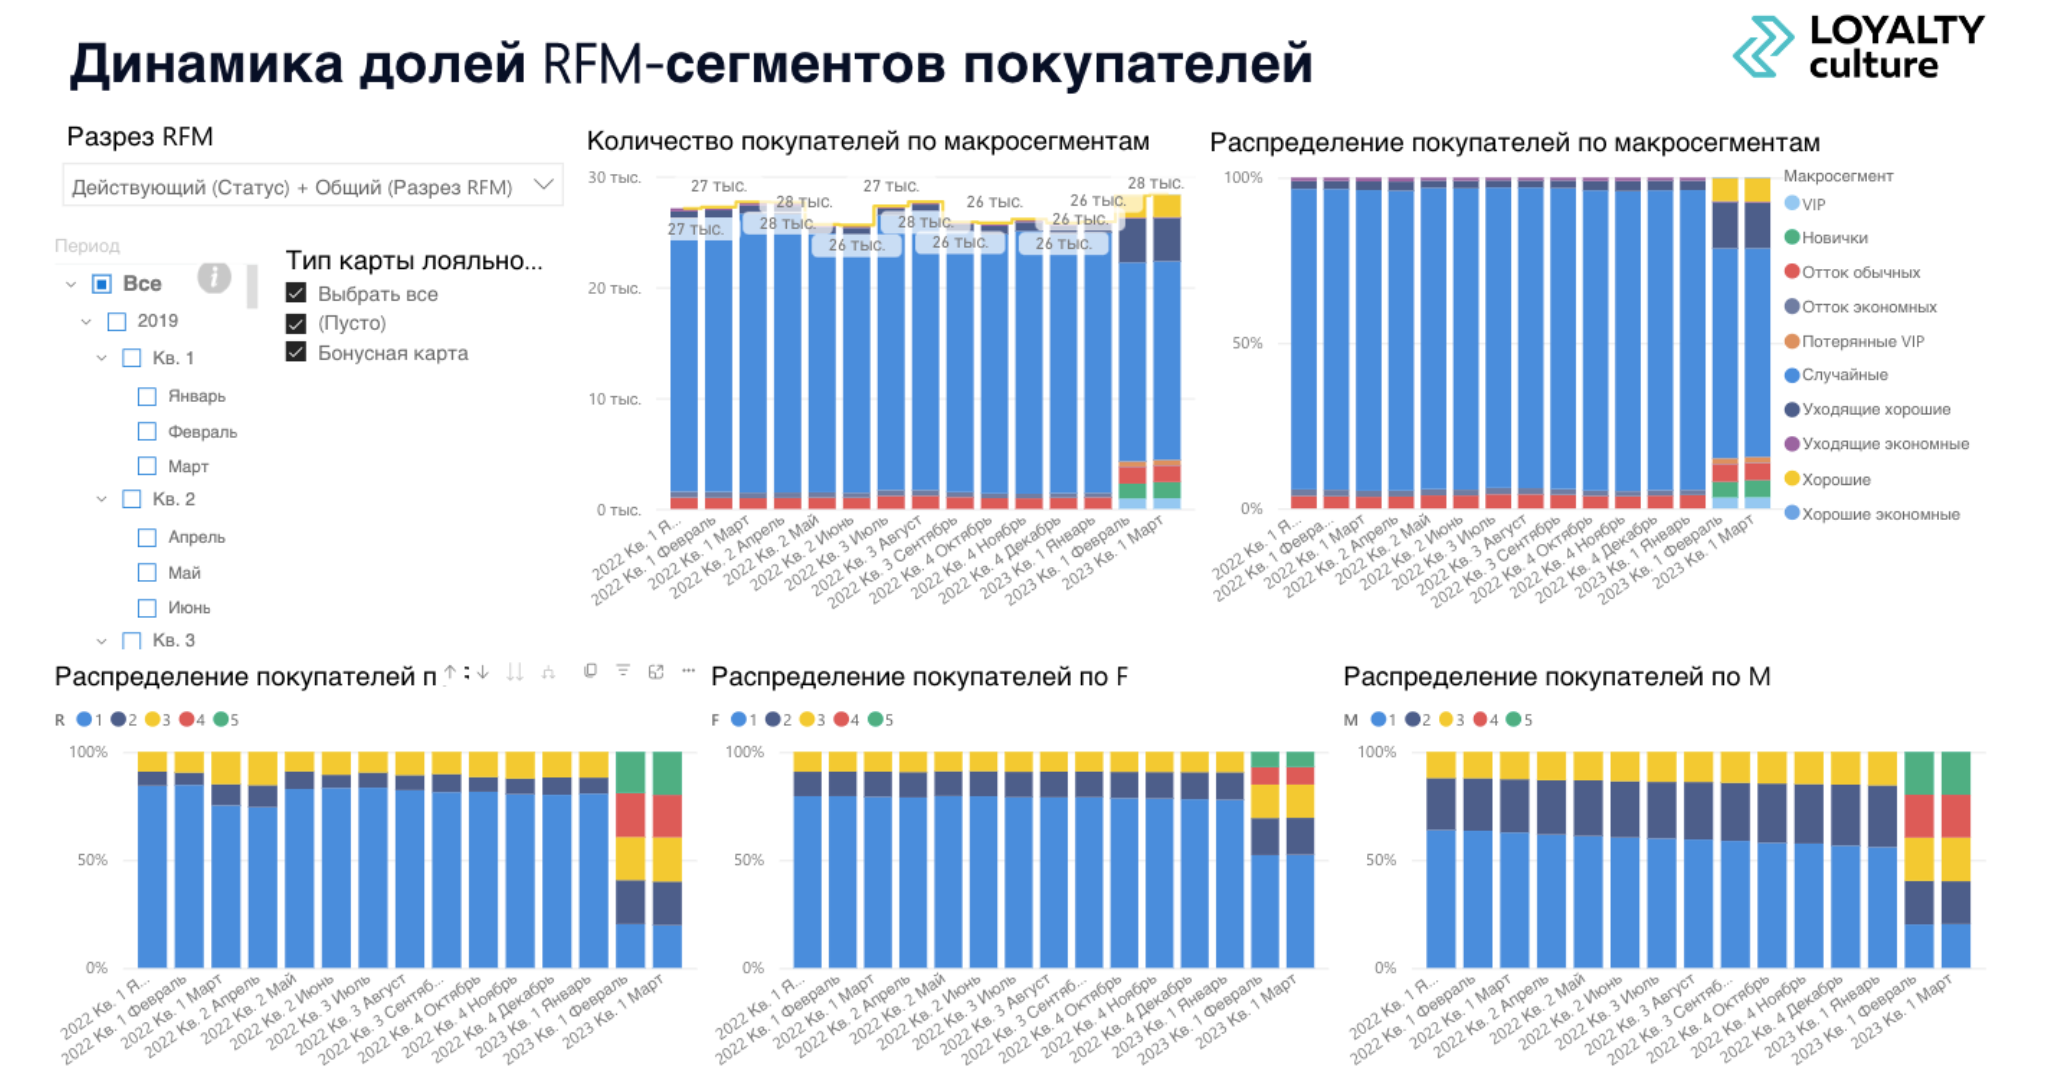 Рис.1 Динамика долей RFM-сегментов покупателей